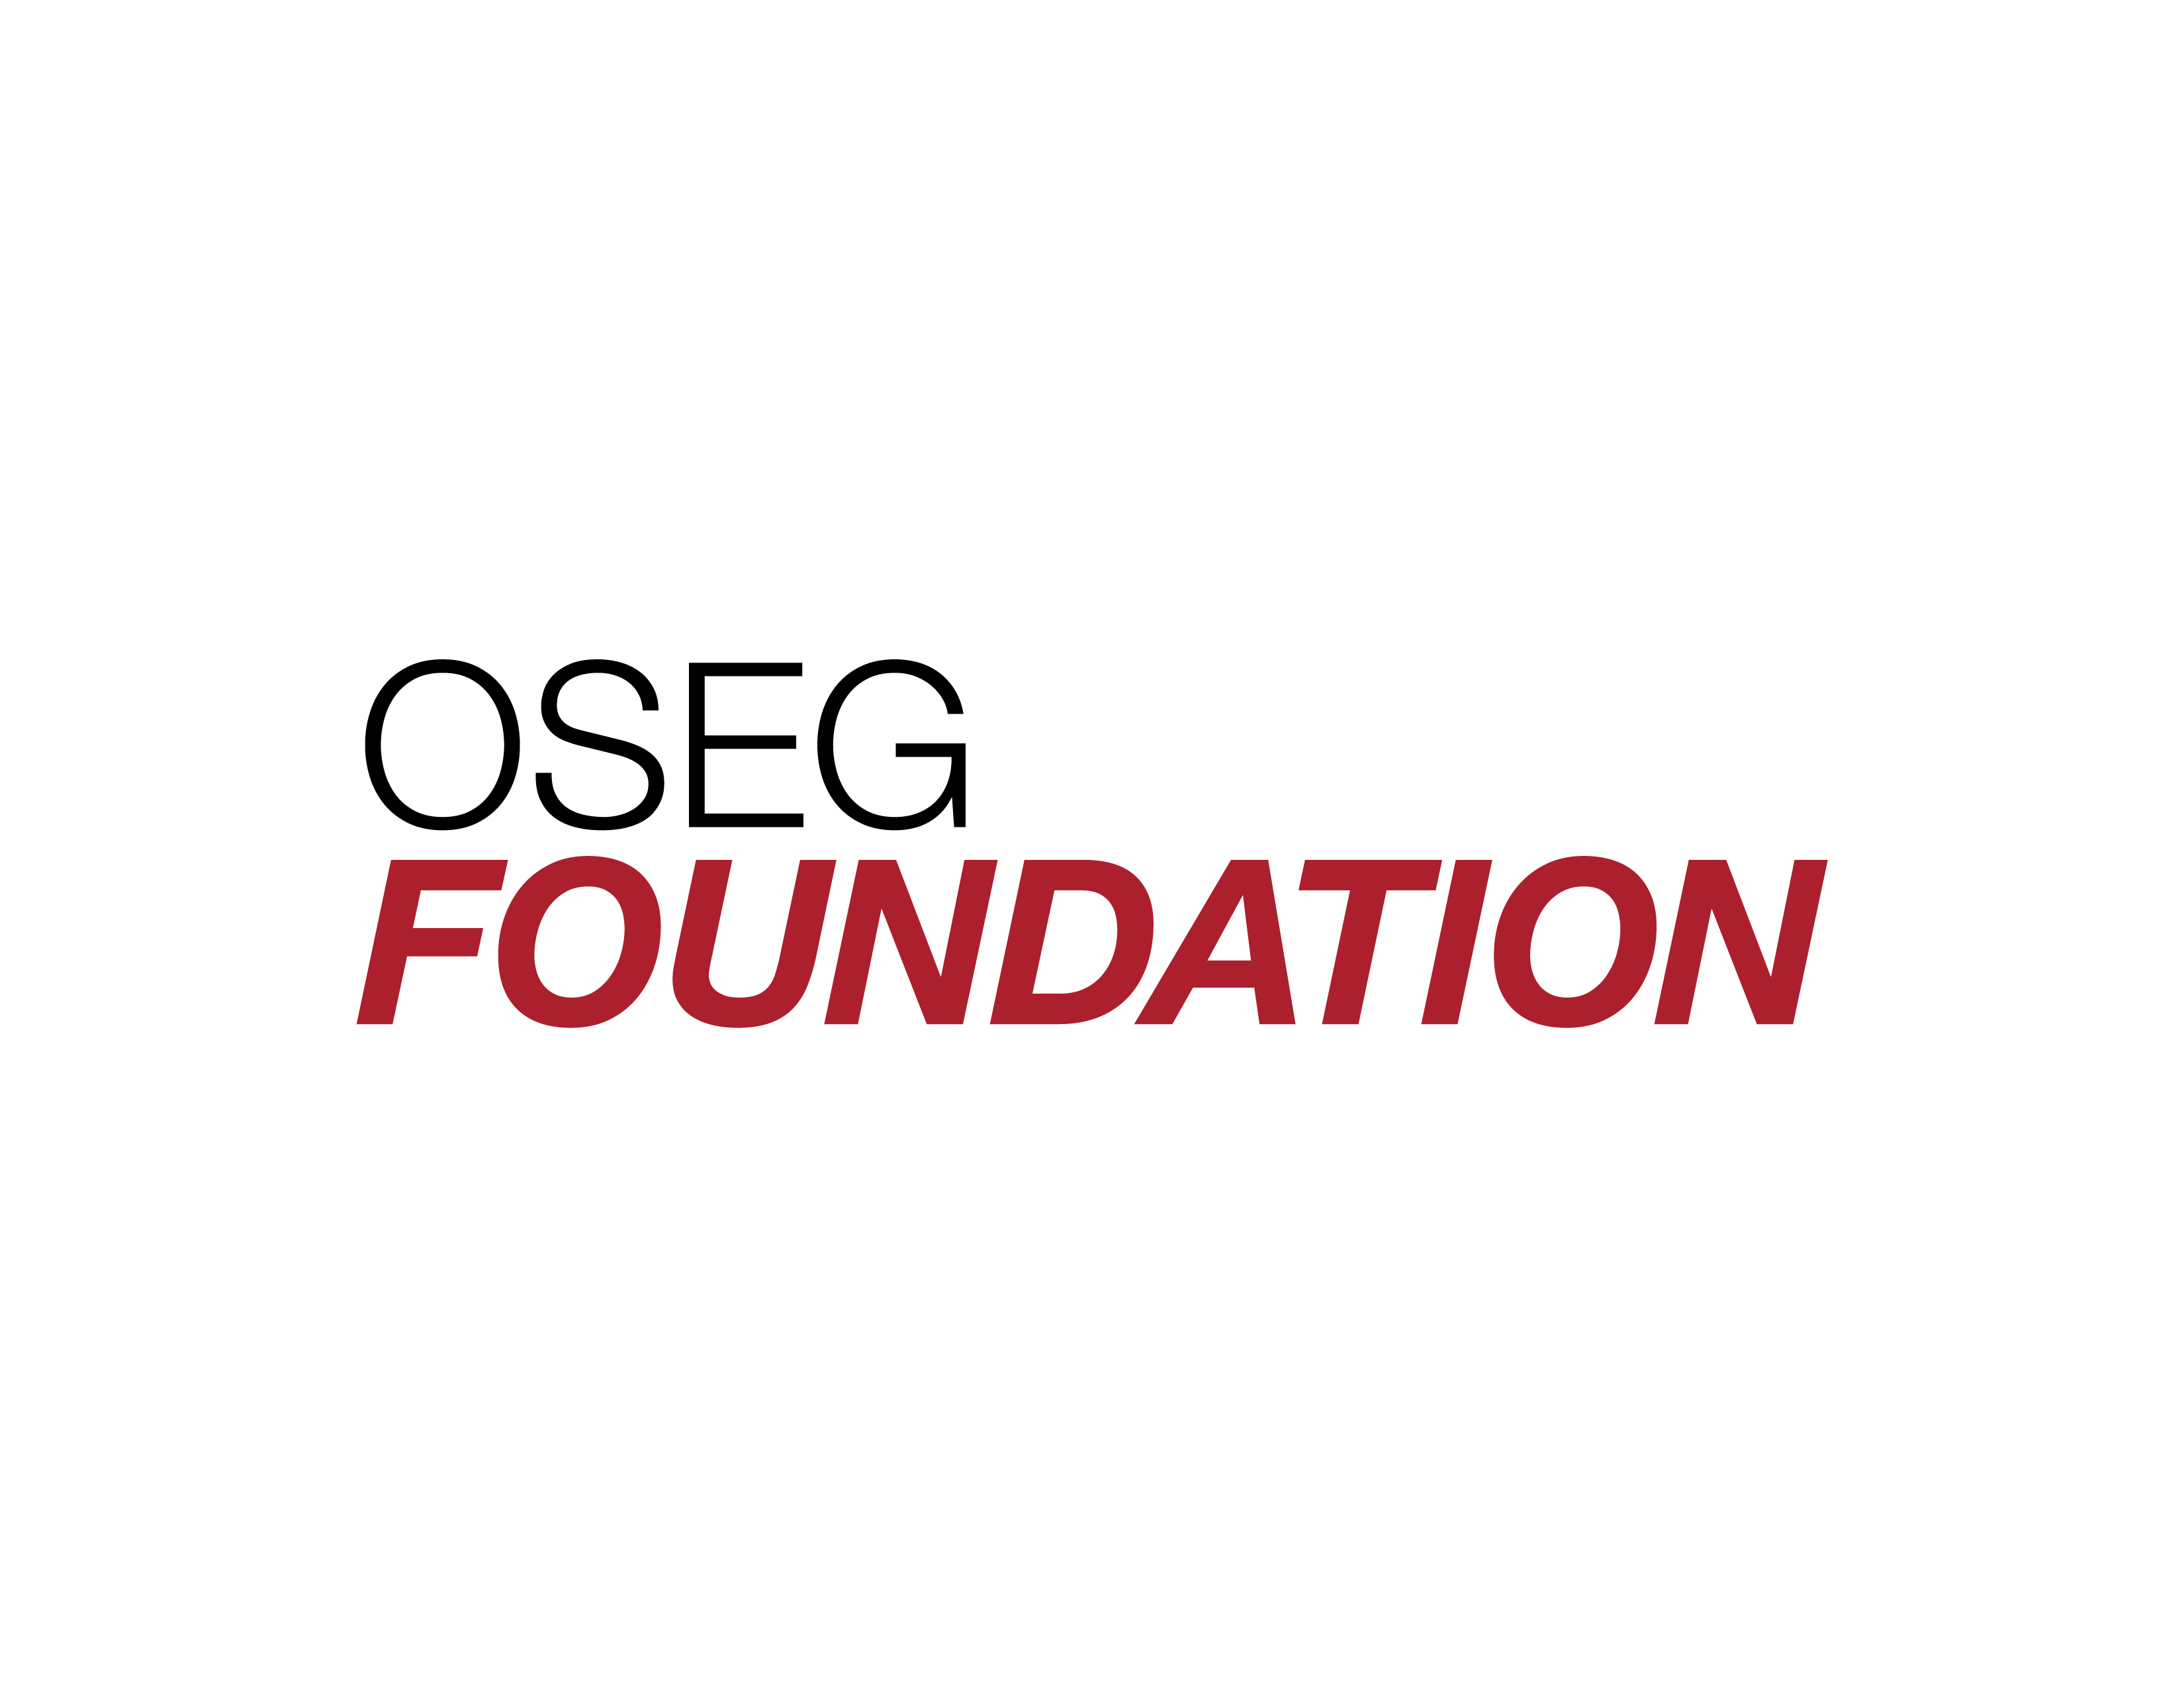 OSEG Foundation